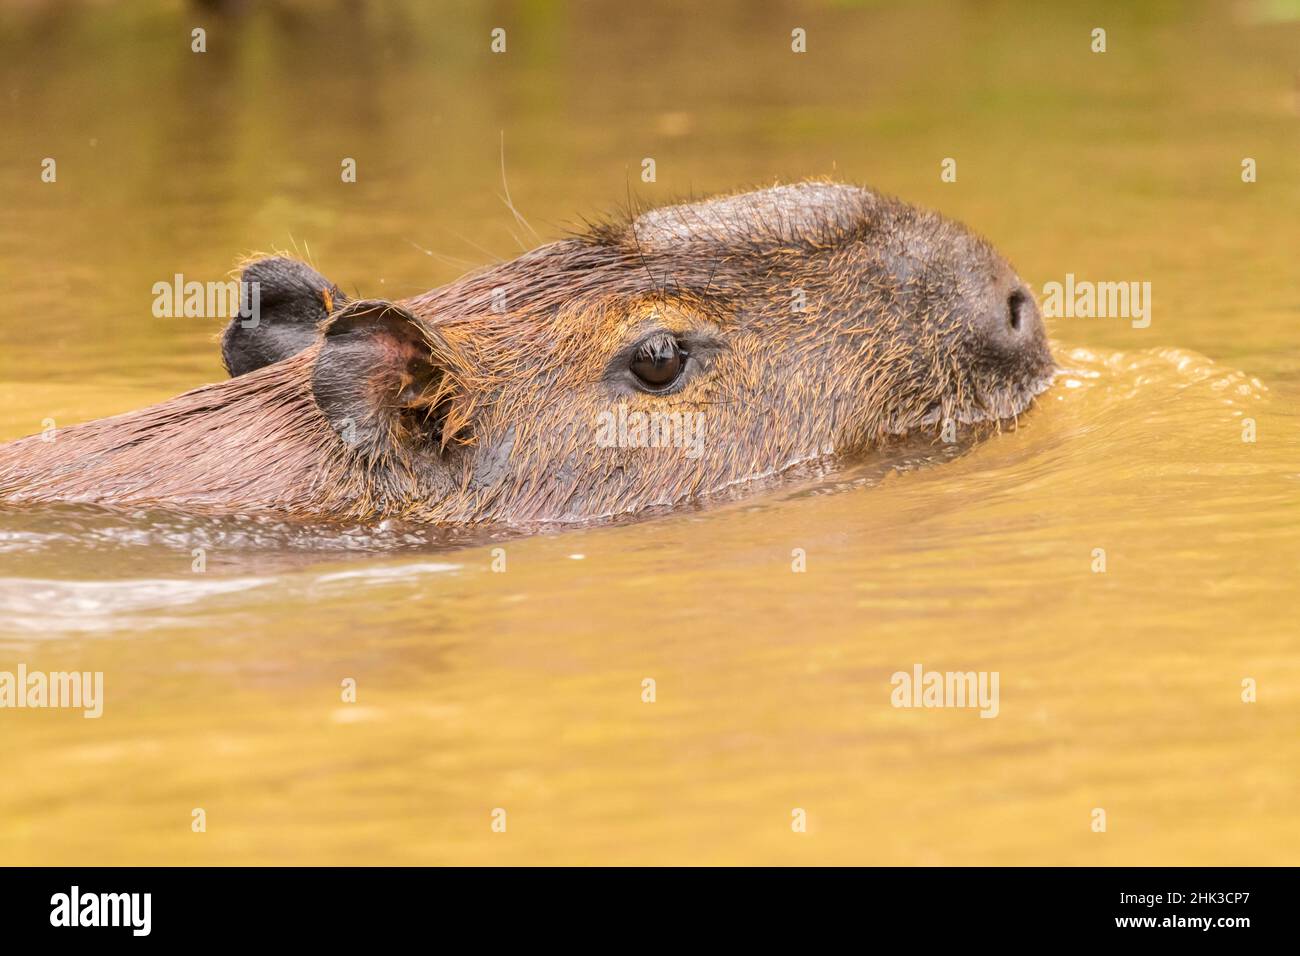 Brasil, Pantanal. Capybara nadando en el agua. Crédito como: Cathy & Gordon  Illg / Jaynes Gallery /  Fotografía de stock - Alamy